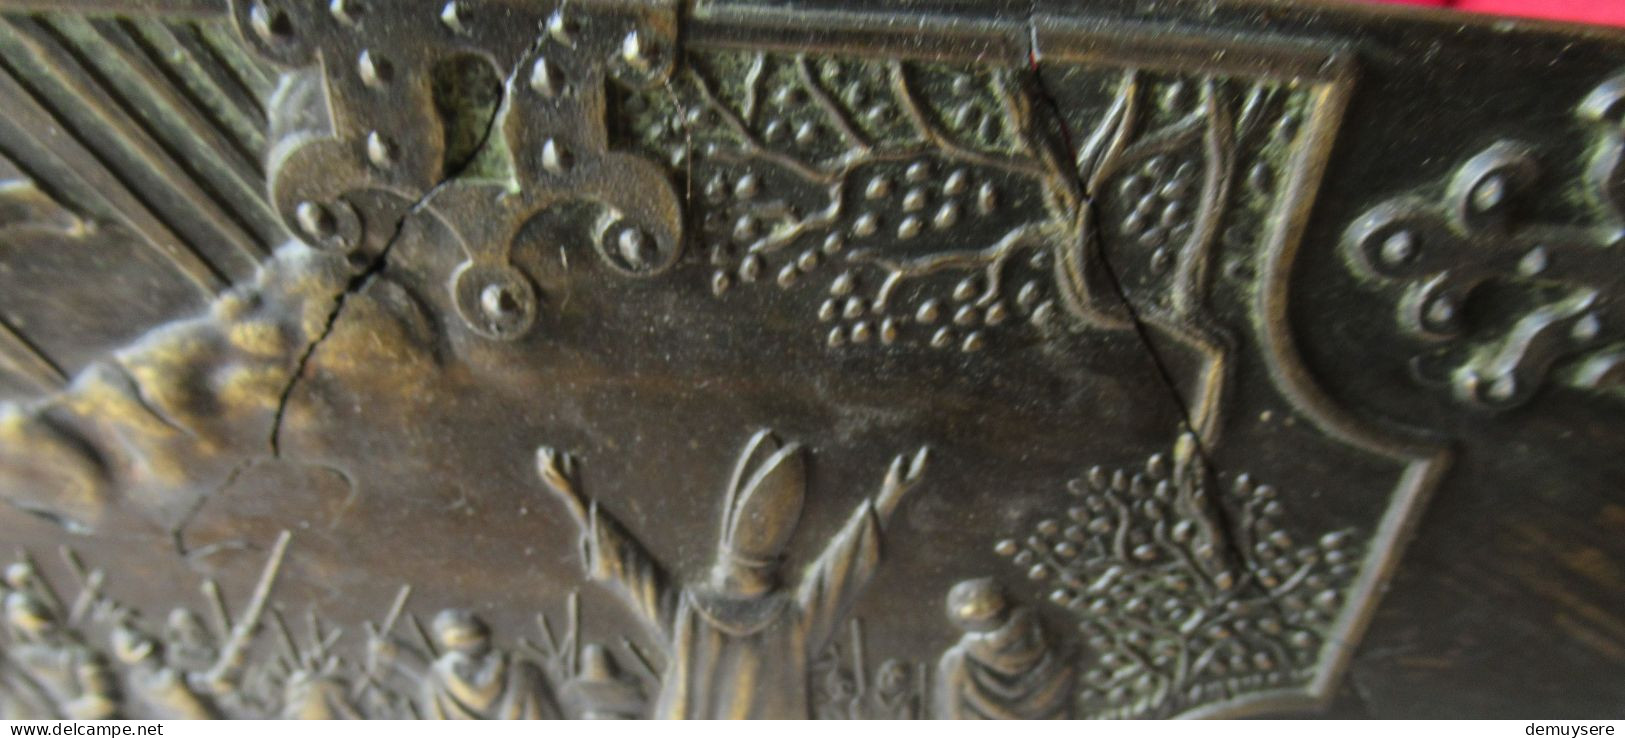 LADE 400  - Koning Valdemar's Kruistochten Herdenkingsdoos 1219 door Iron Art Kopenhagen - 1838 gram - 20x10x9 cm